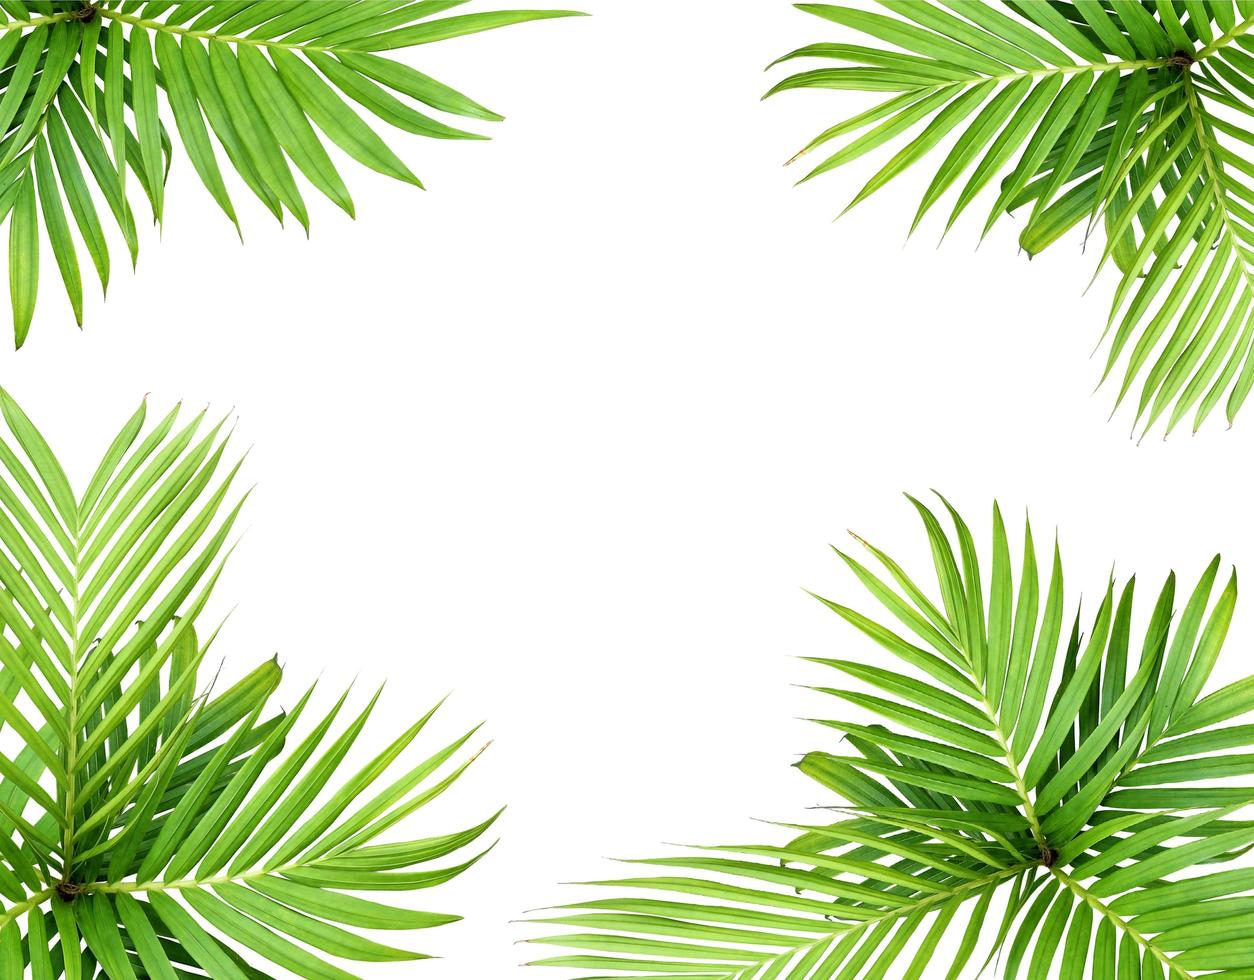 Hoja verde de una palmera aislado sobre un fondo blanco. foto